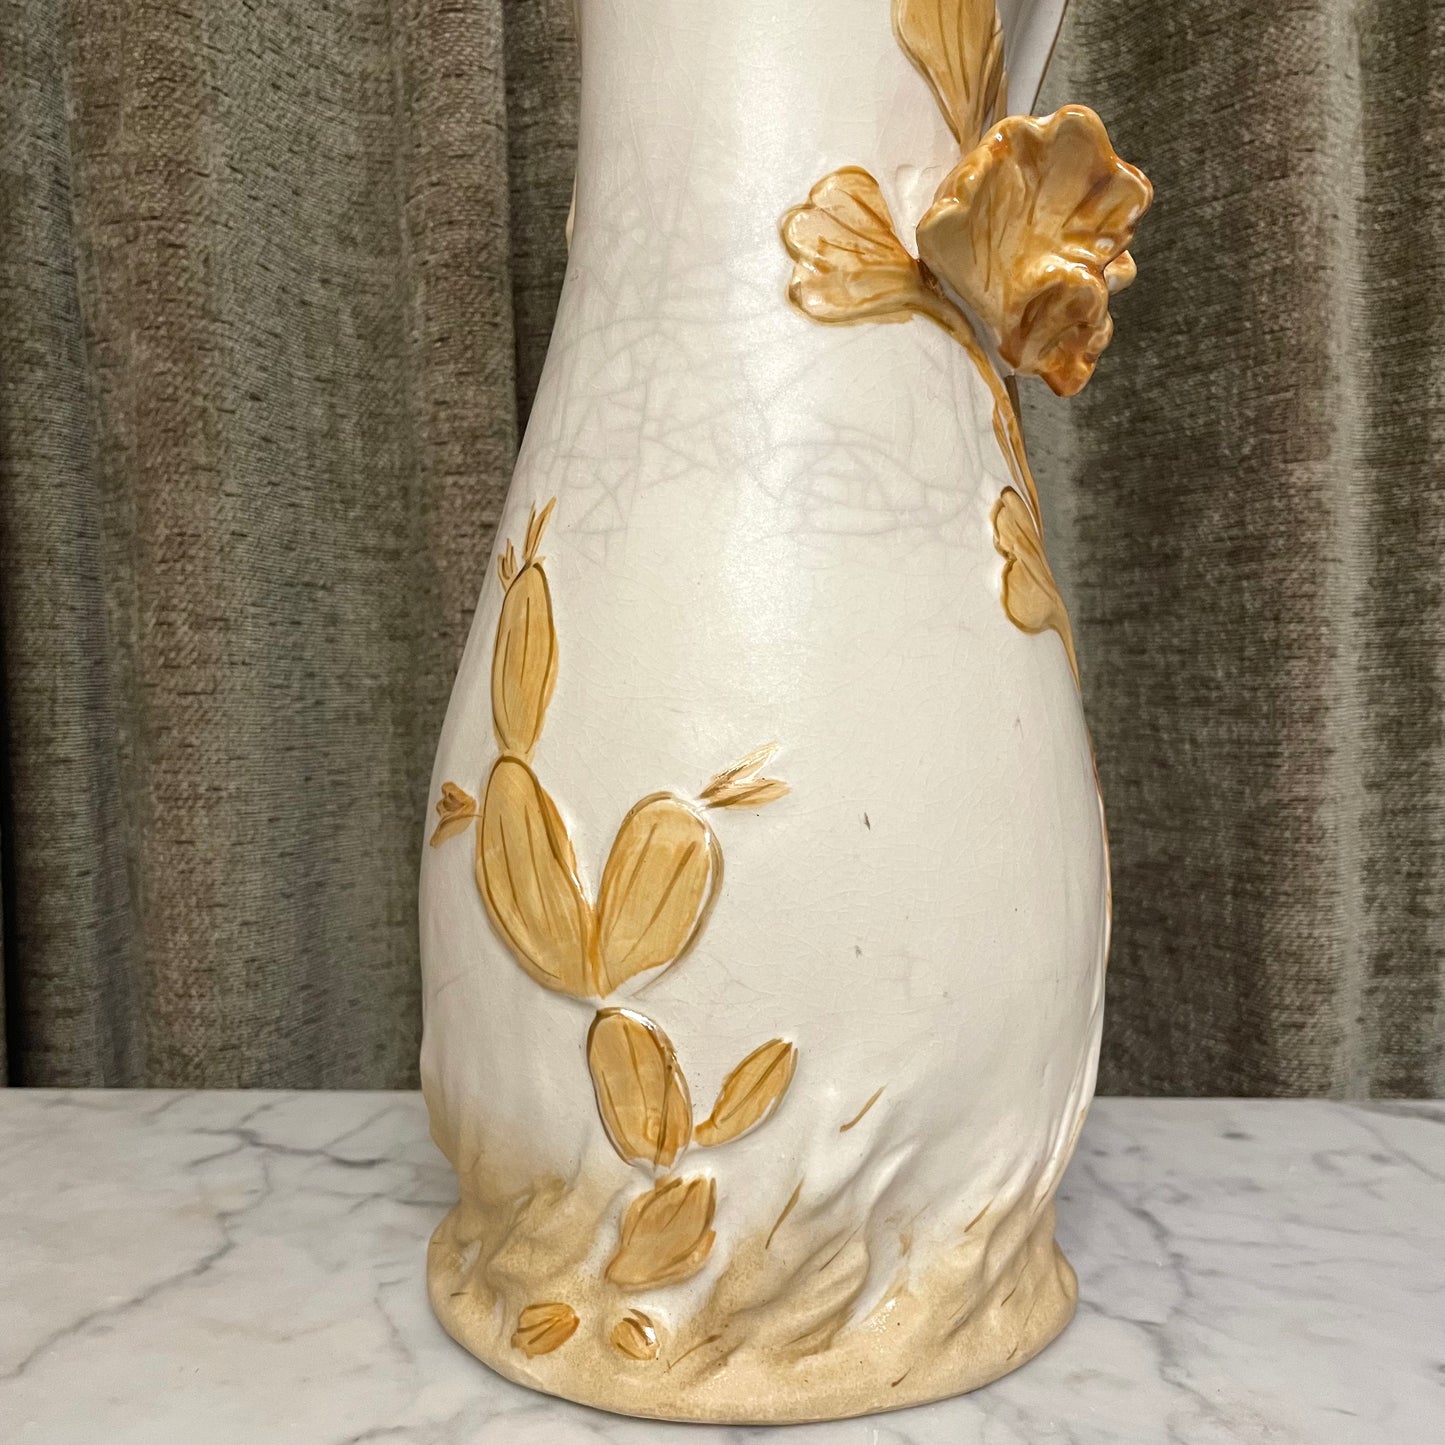 Art Nouveau Revival Royal Dux Style Vase with Nymph